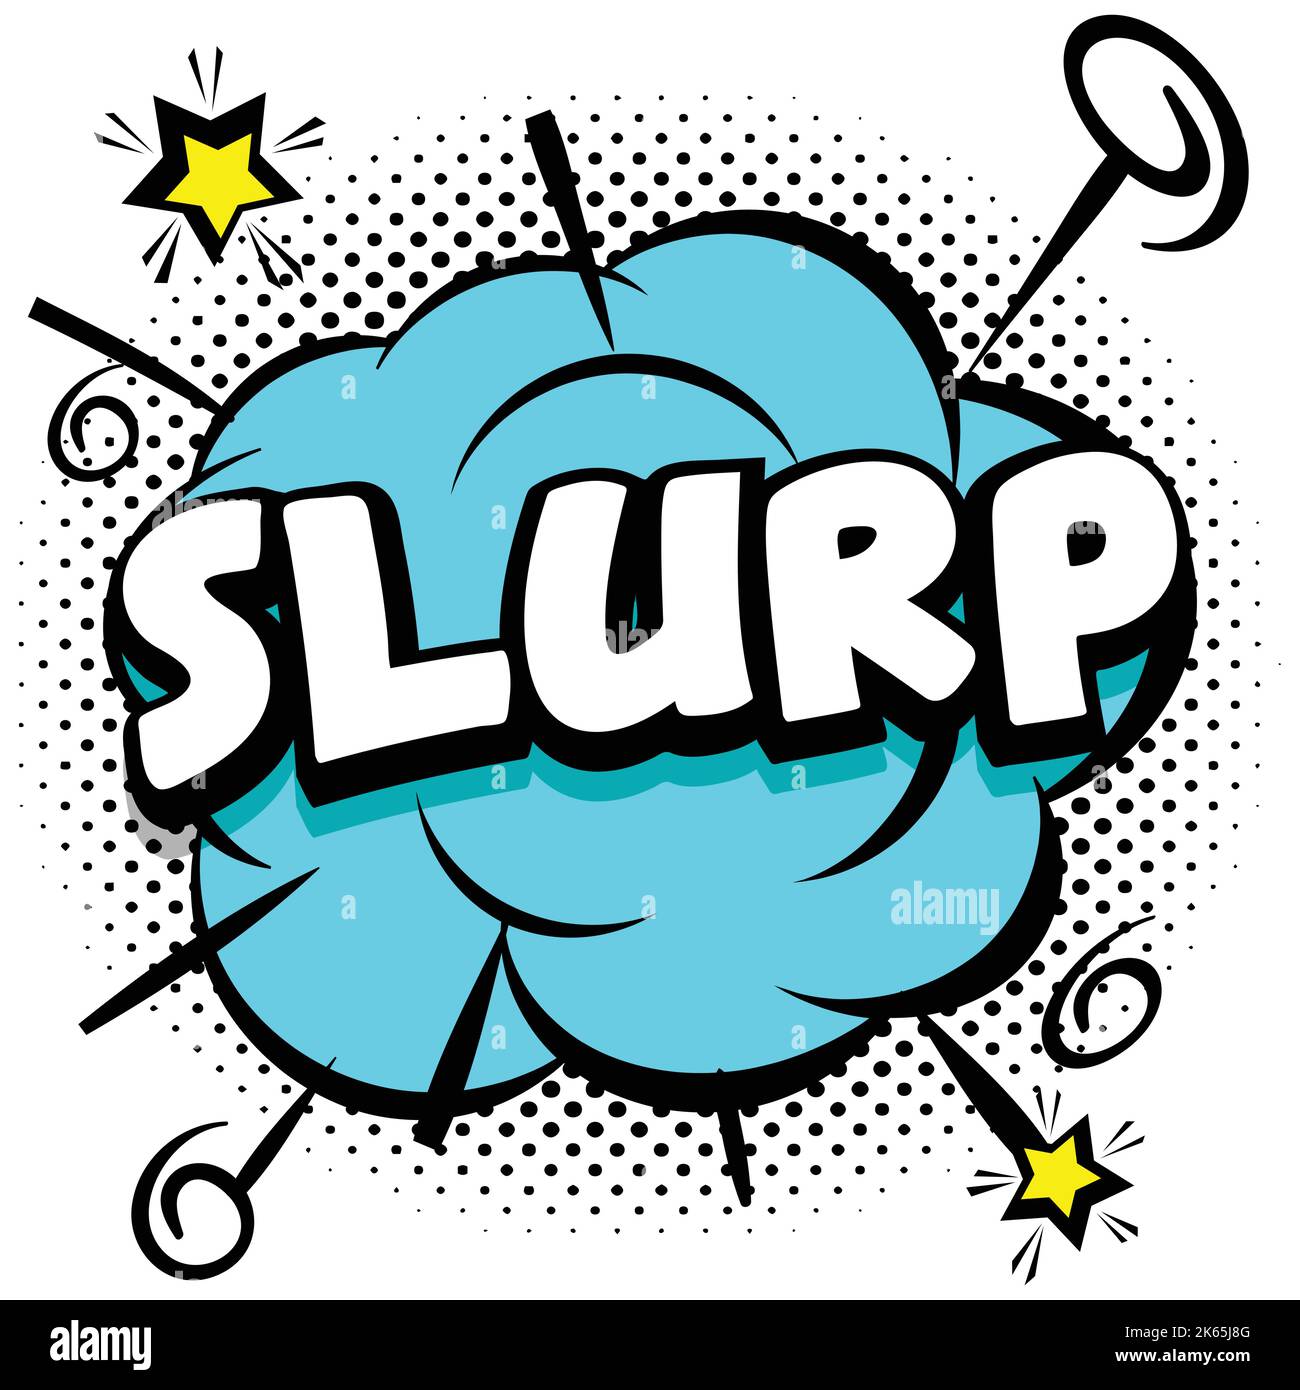 Slurp Comic helle Vorlage mit Sprechblasen auf bunten Rahmen Vektor-Illustration Stock Vektor